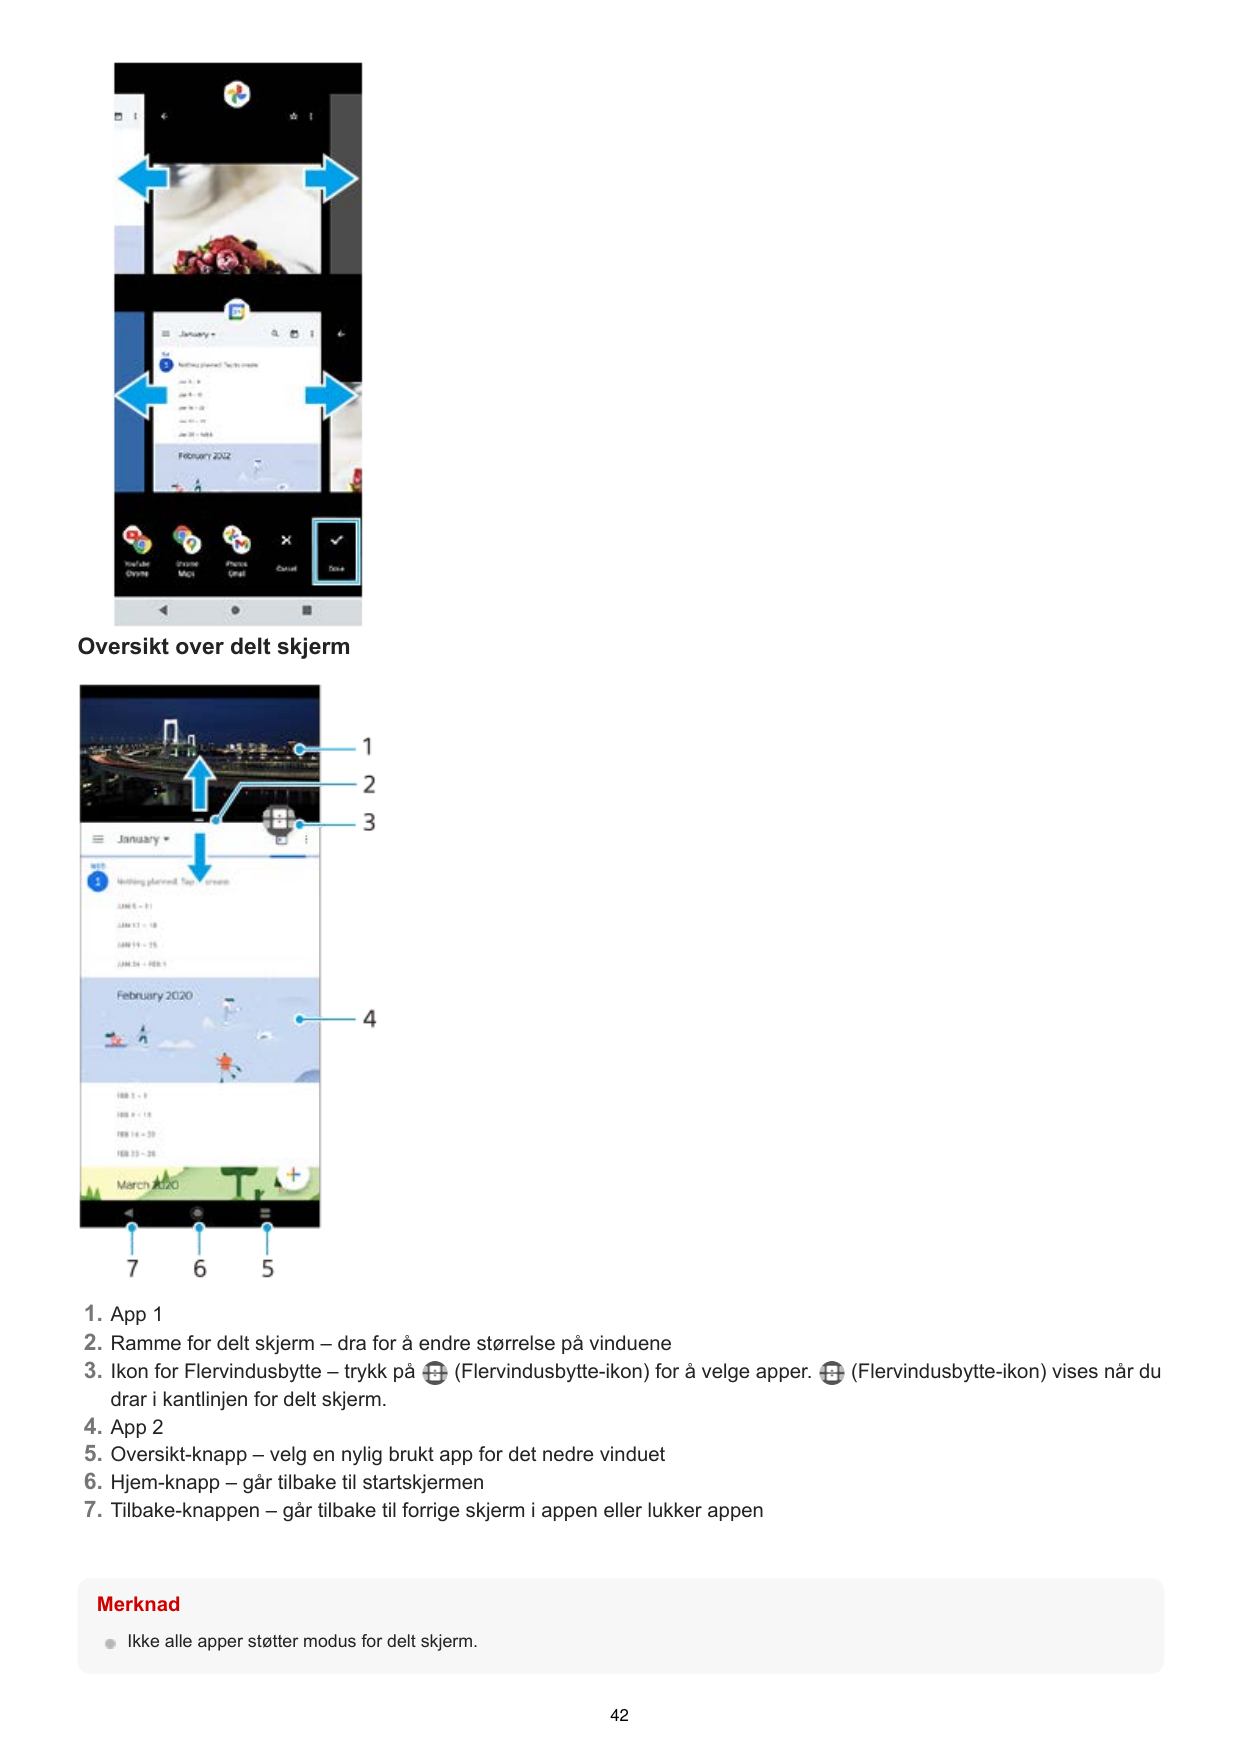 Oversikt over delt skjerm1. App 12. Ramme for delt skjerm – dra for å endre størrelse på vinduene3. Ikon for Flervindusbytte – t